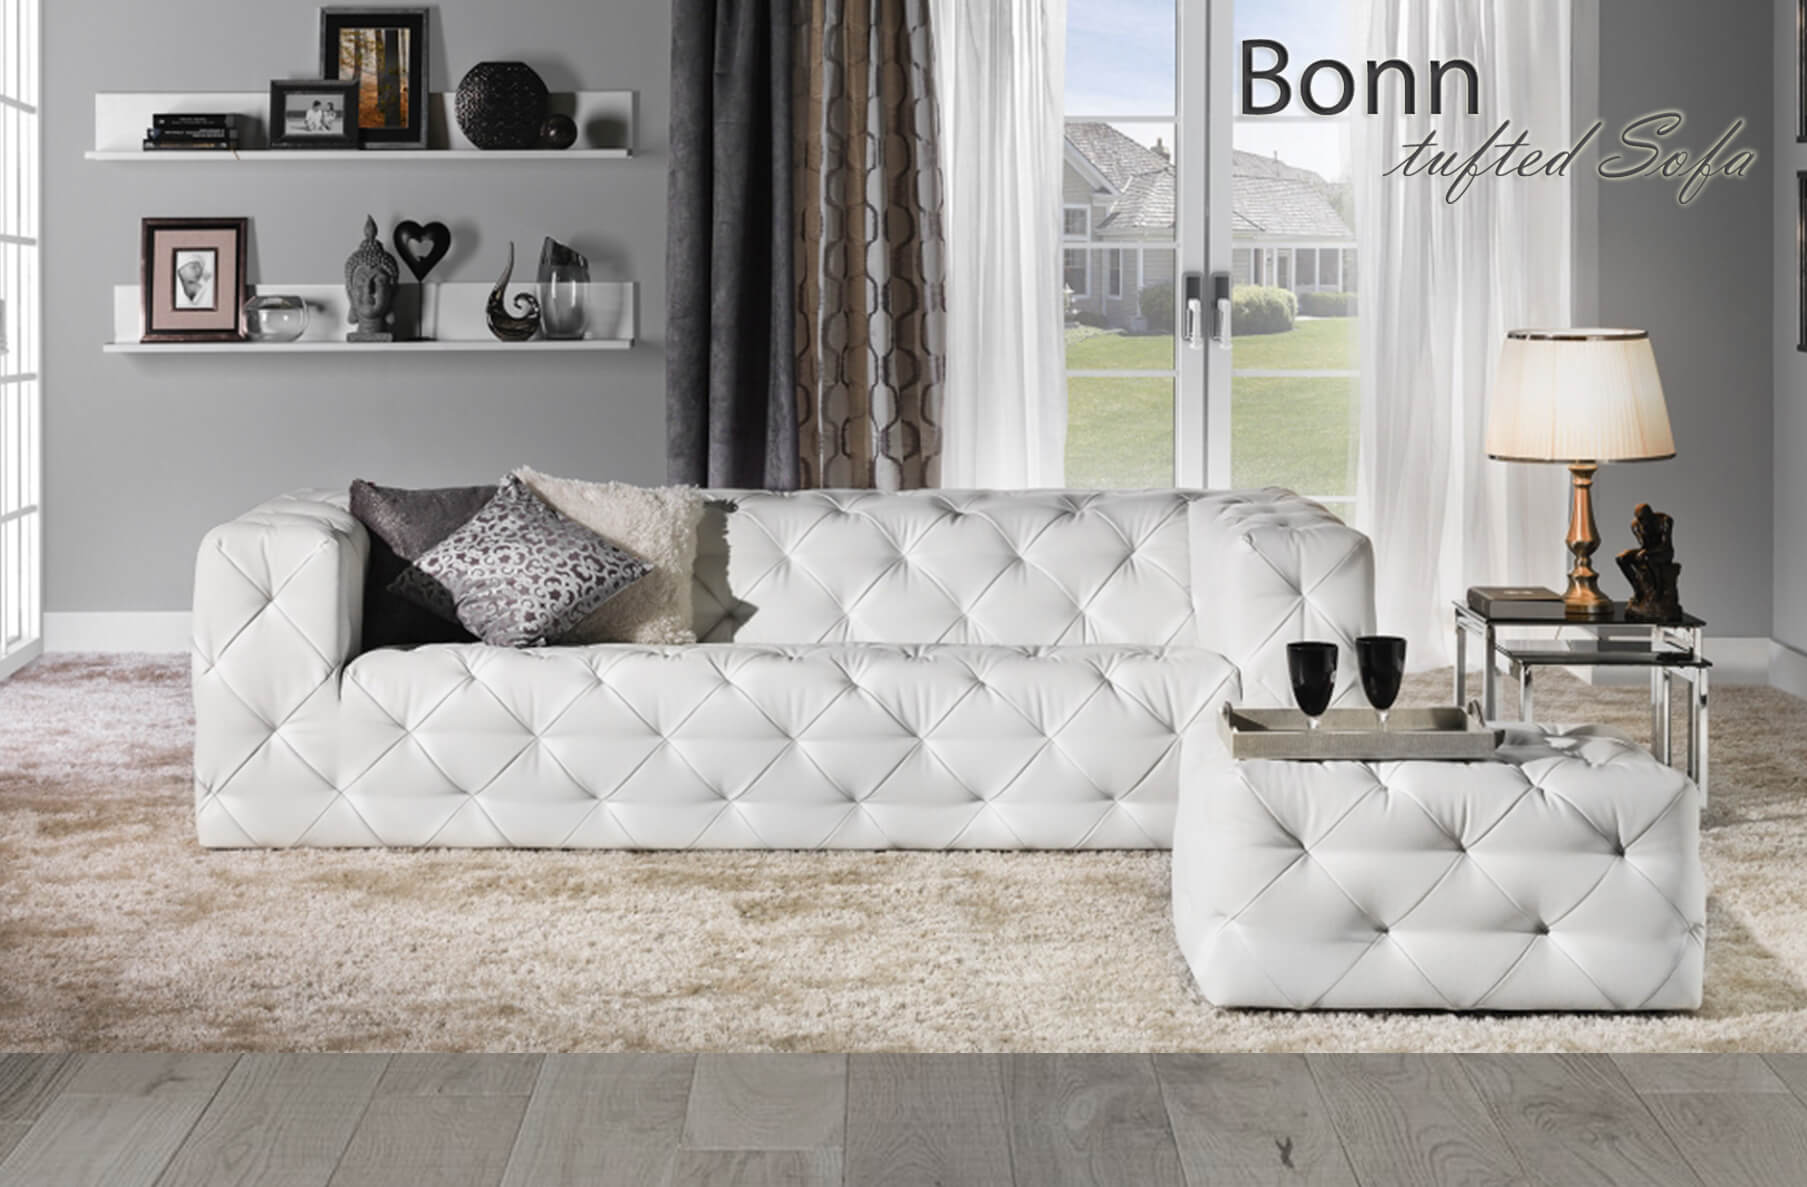 Bonn Sofa, Cheap